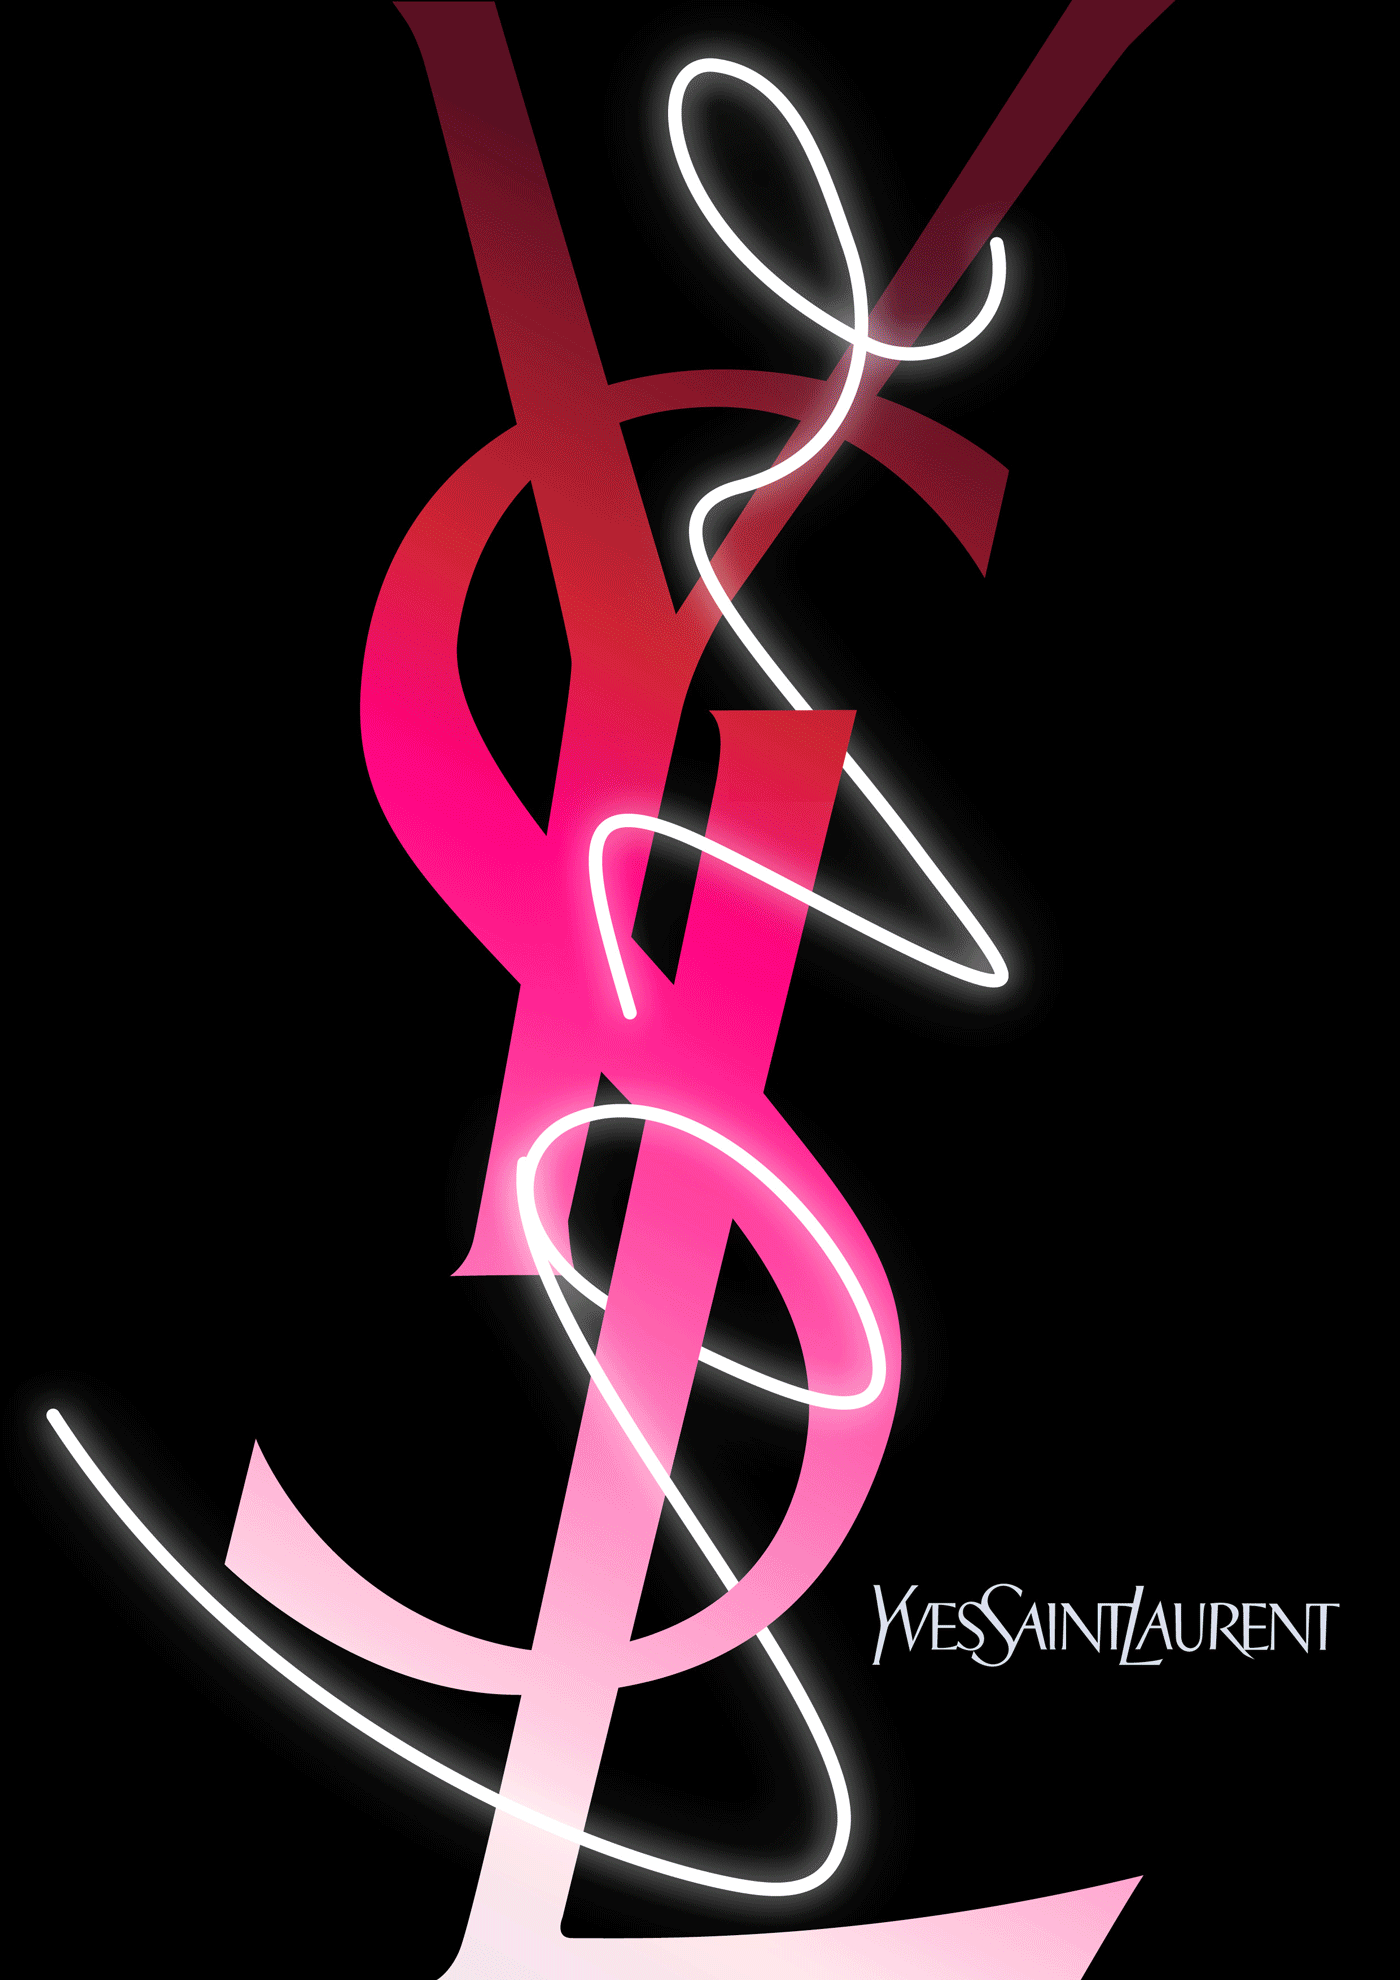 Yves Saint Laurent / YSL Parfums – YSL Love event concept 2018 (proposal)